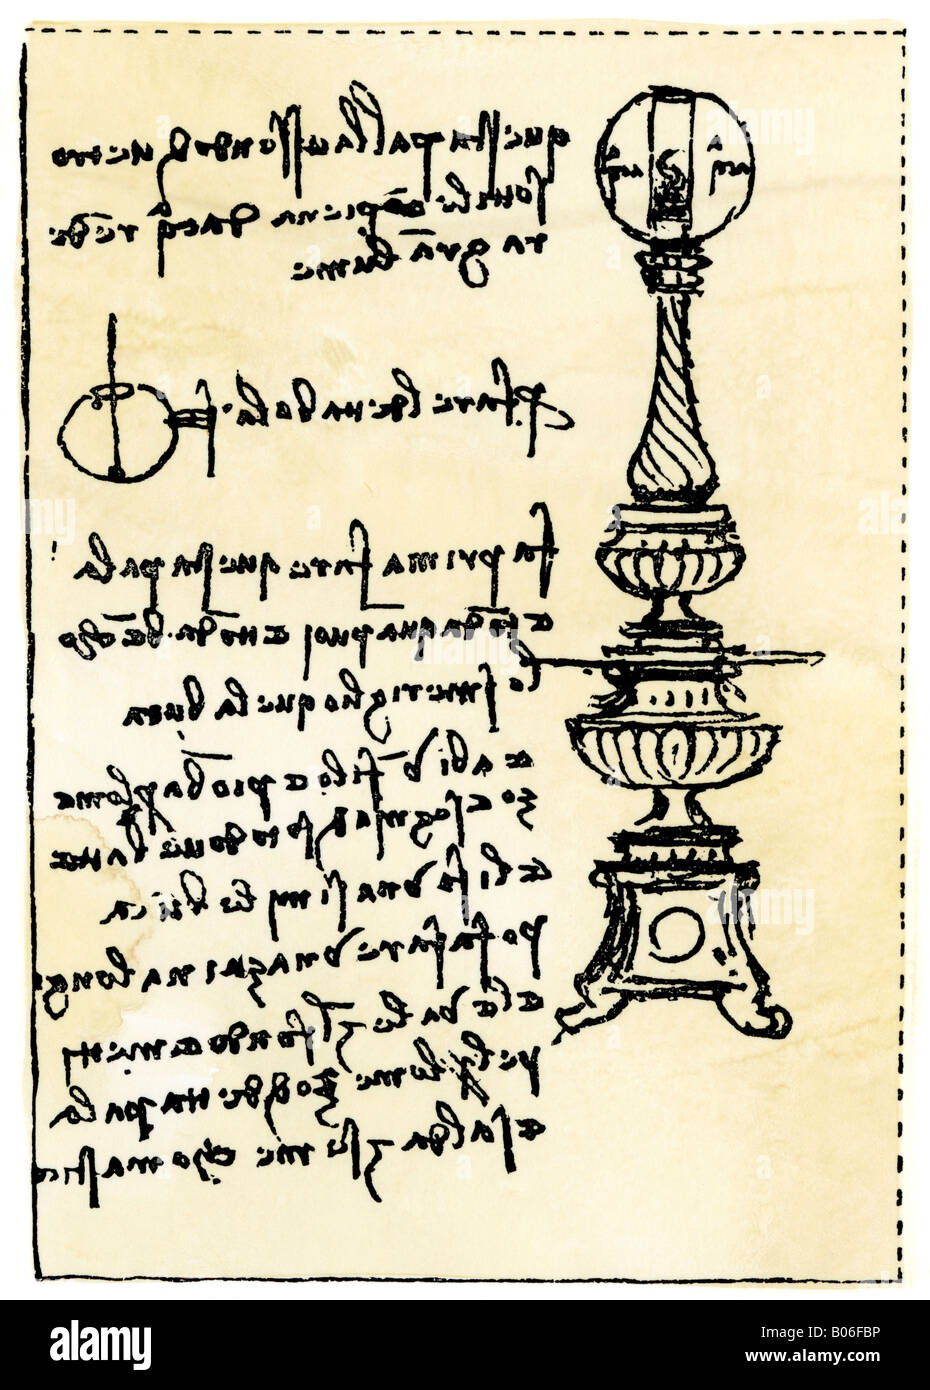 Léonard de Vinci en arrière sur son écriture pour une lampe à l'aide d'un globe rempli d'eau. Gravure sur bois avec un lavage à l'aquarelle Banque D'Images